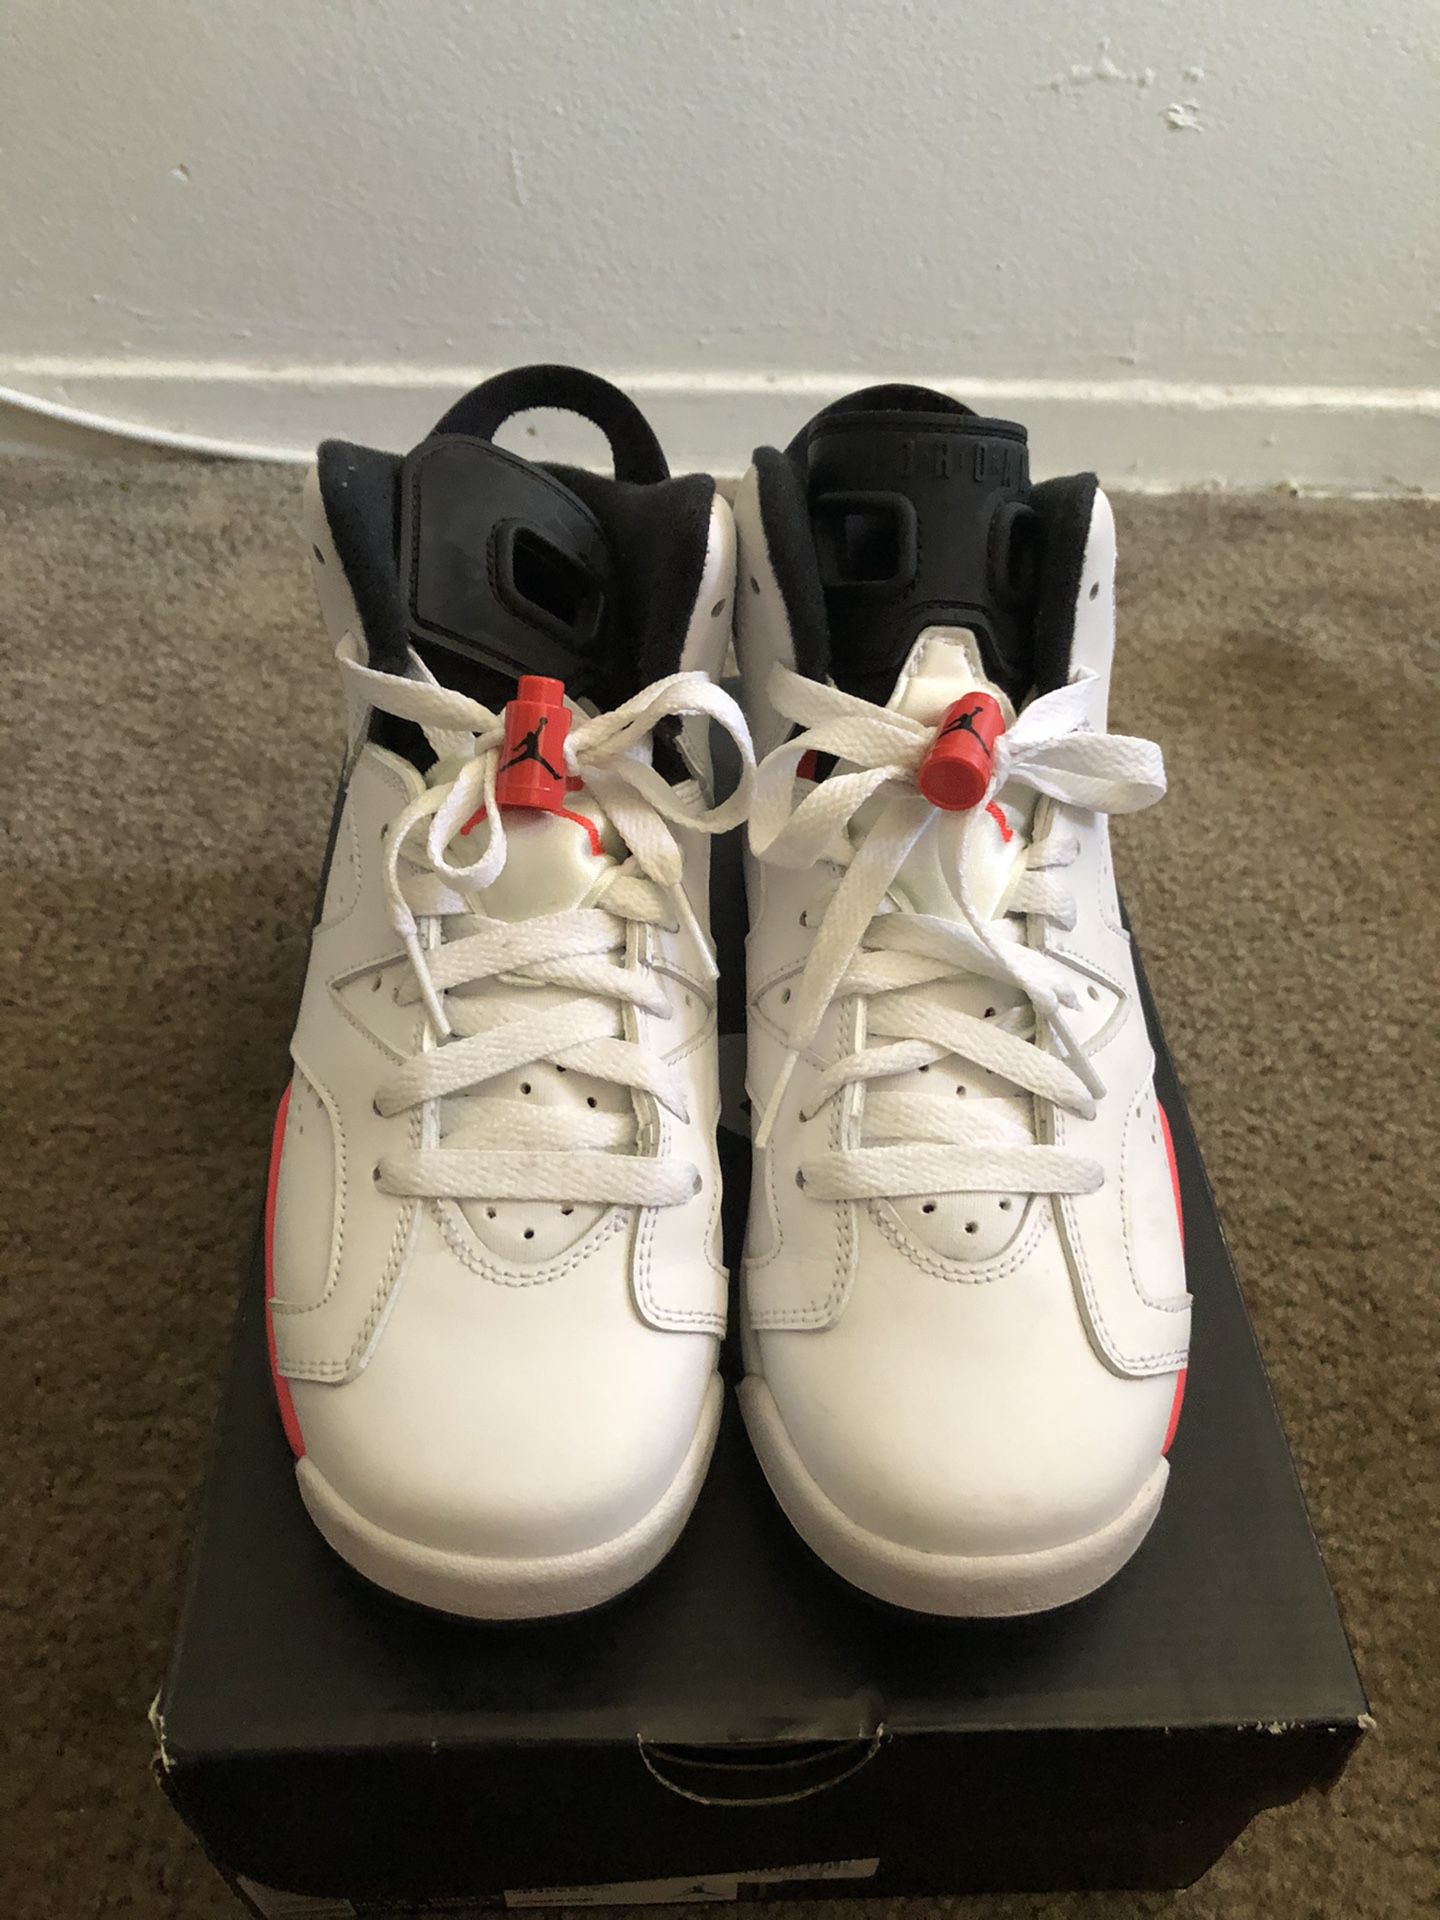 Jordan Retro 6 White Infrared